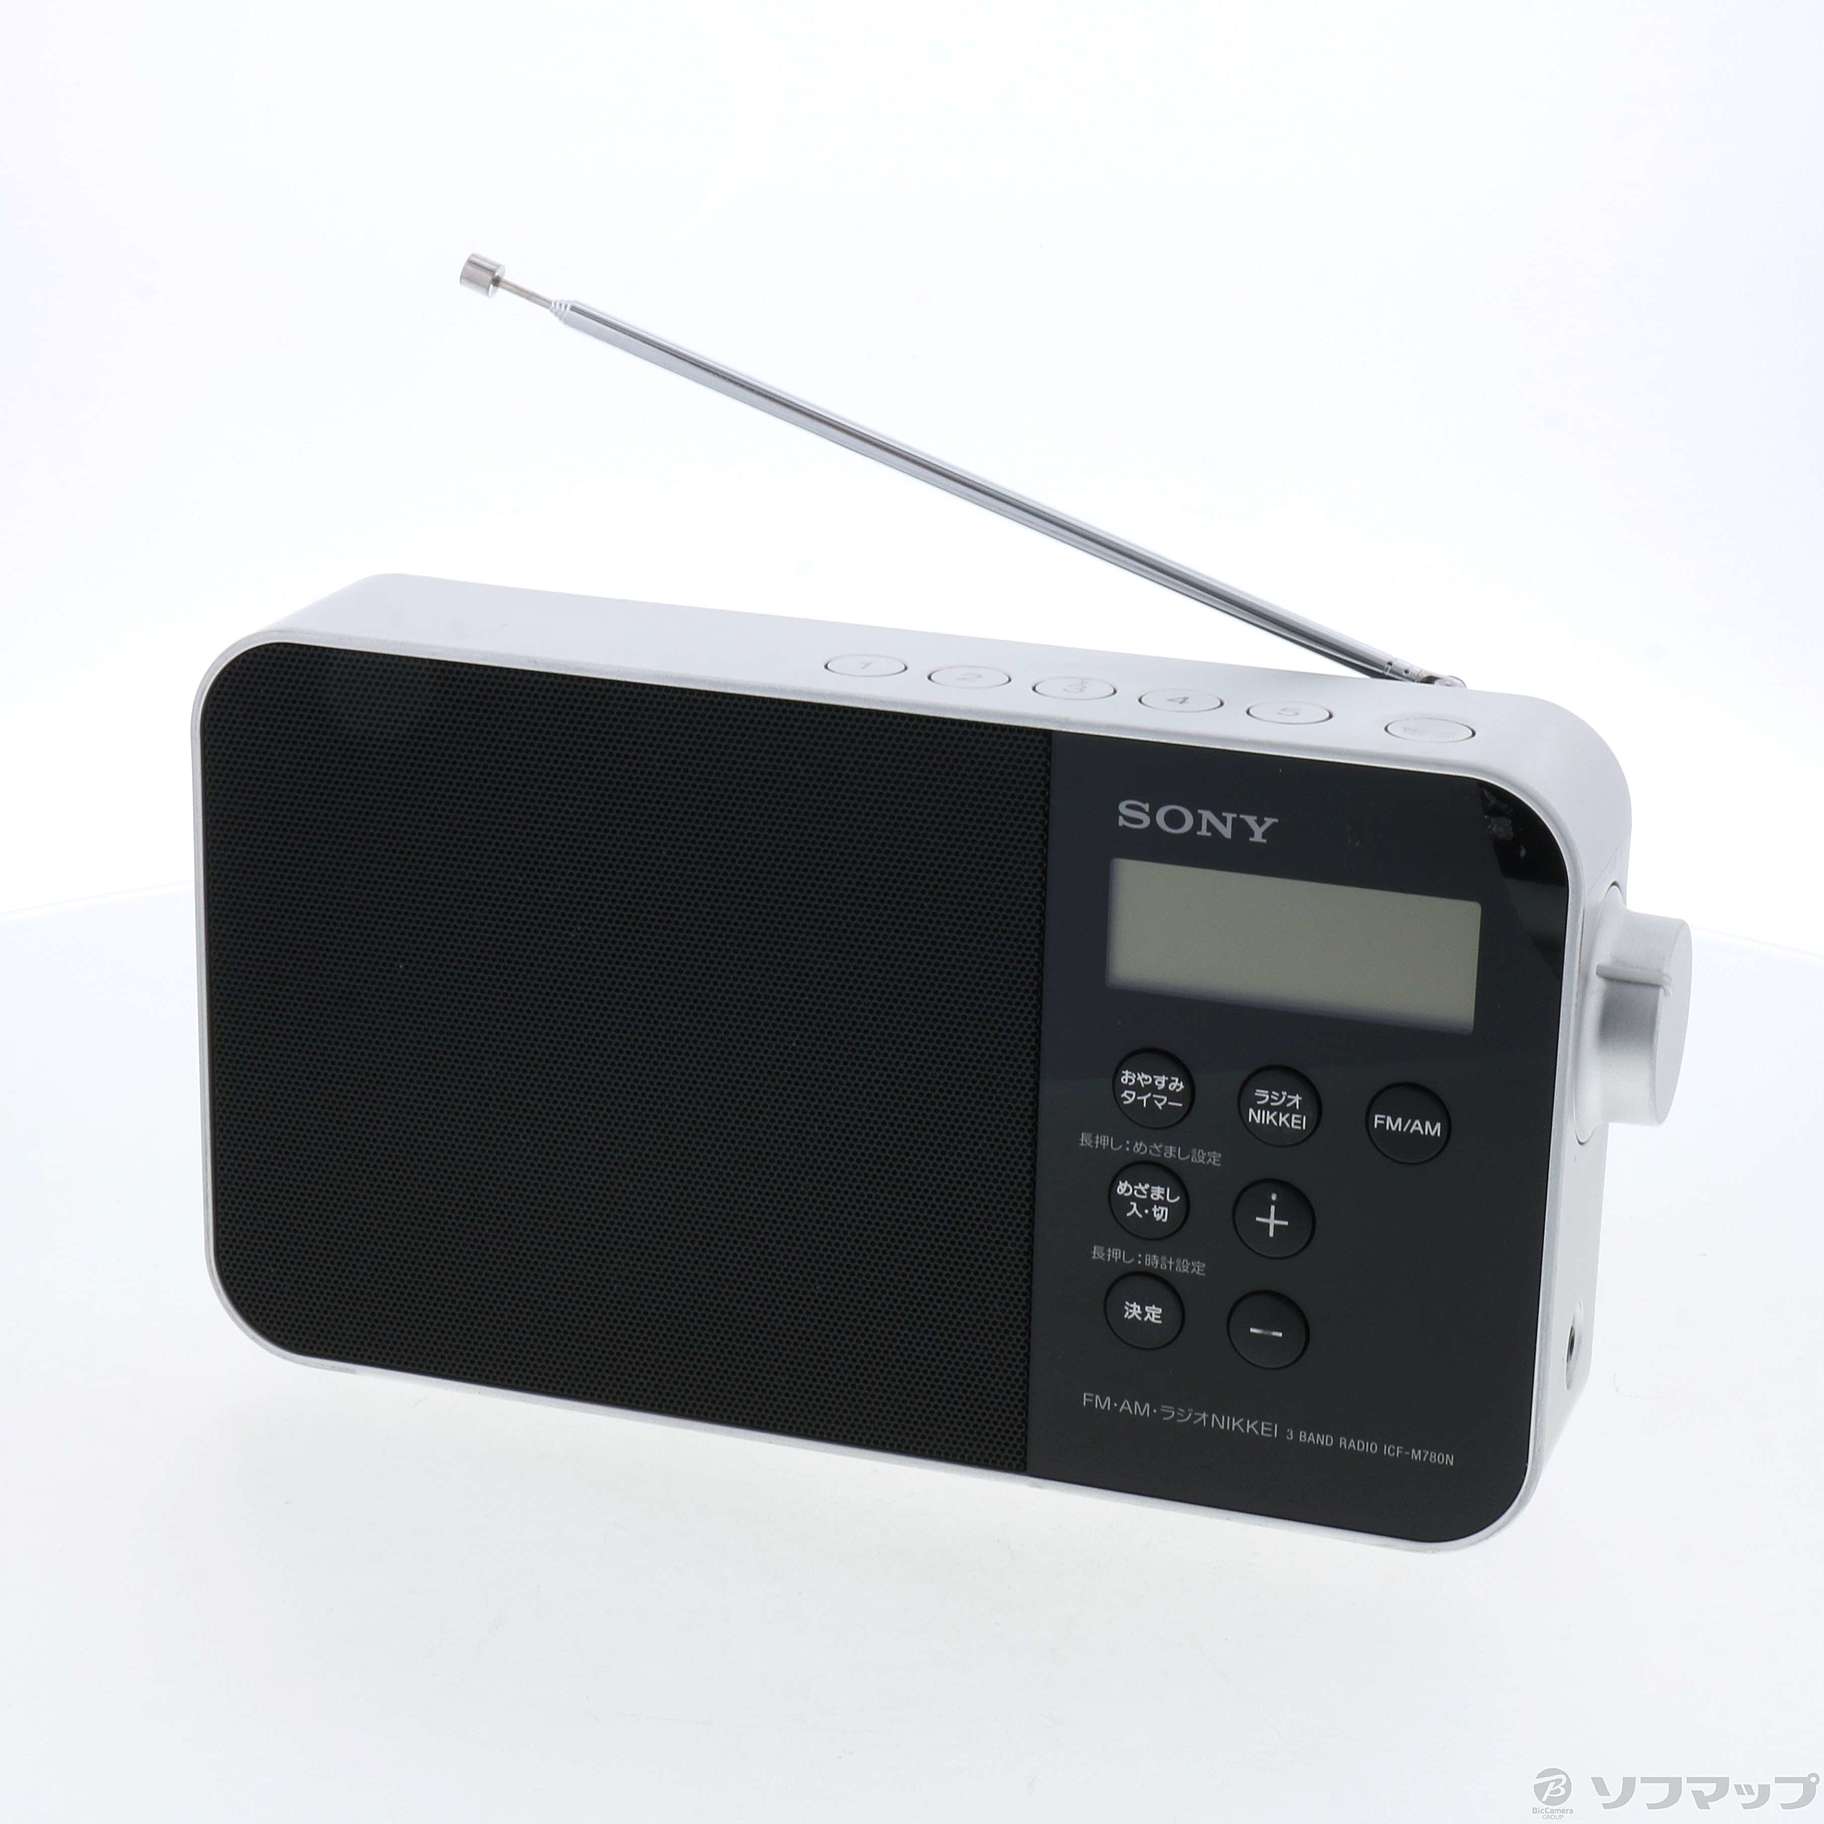 SONY PLLシンセサイザーポータブルラジオ ICF-M780N【16年製】 - ラジオ